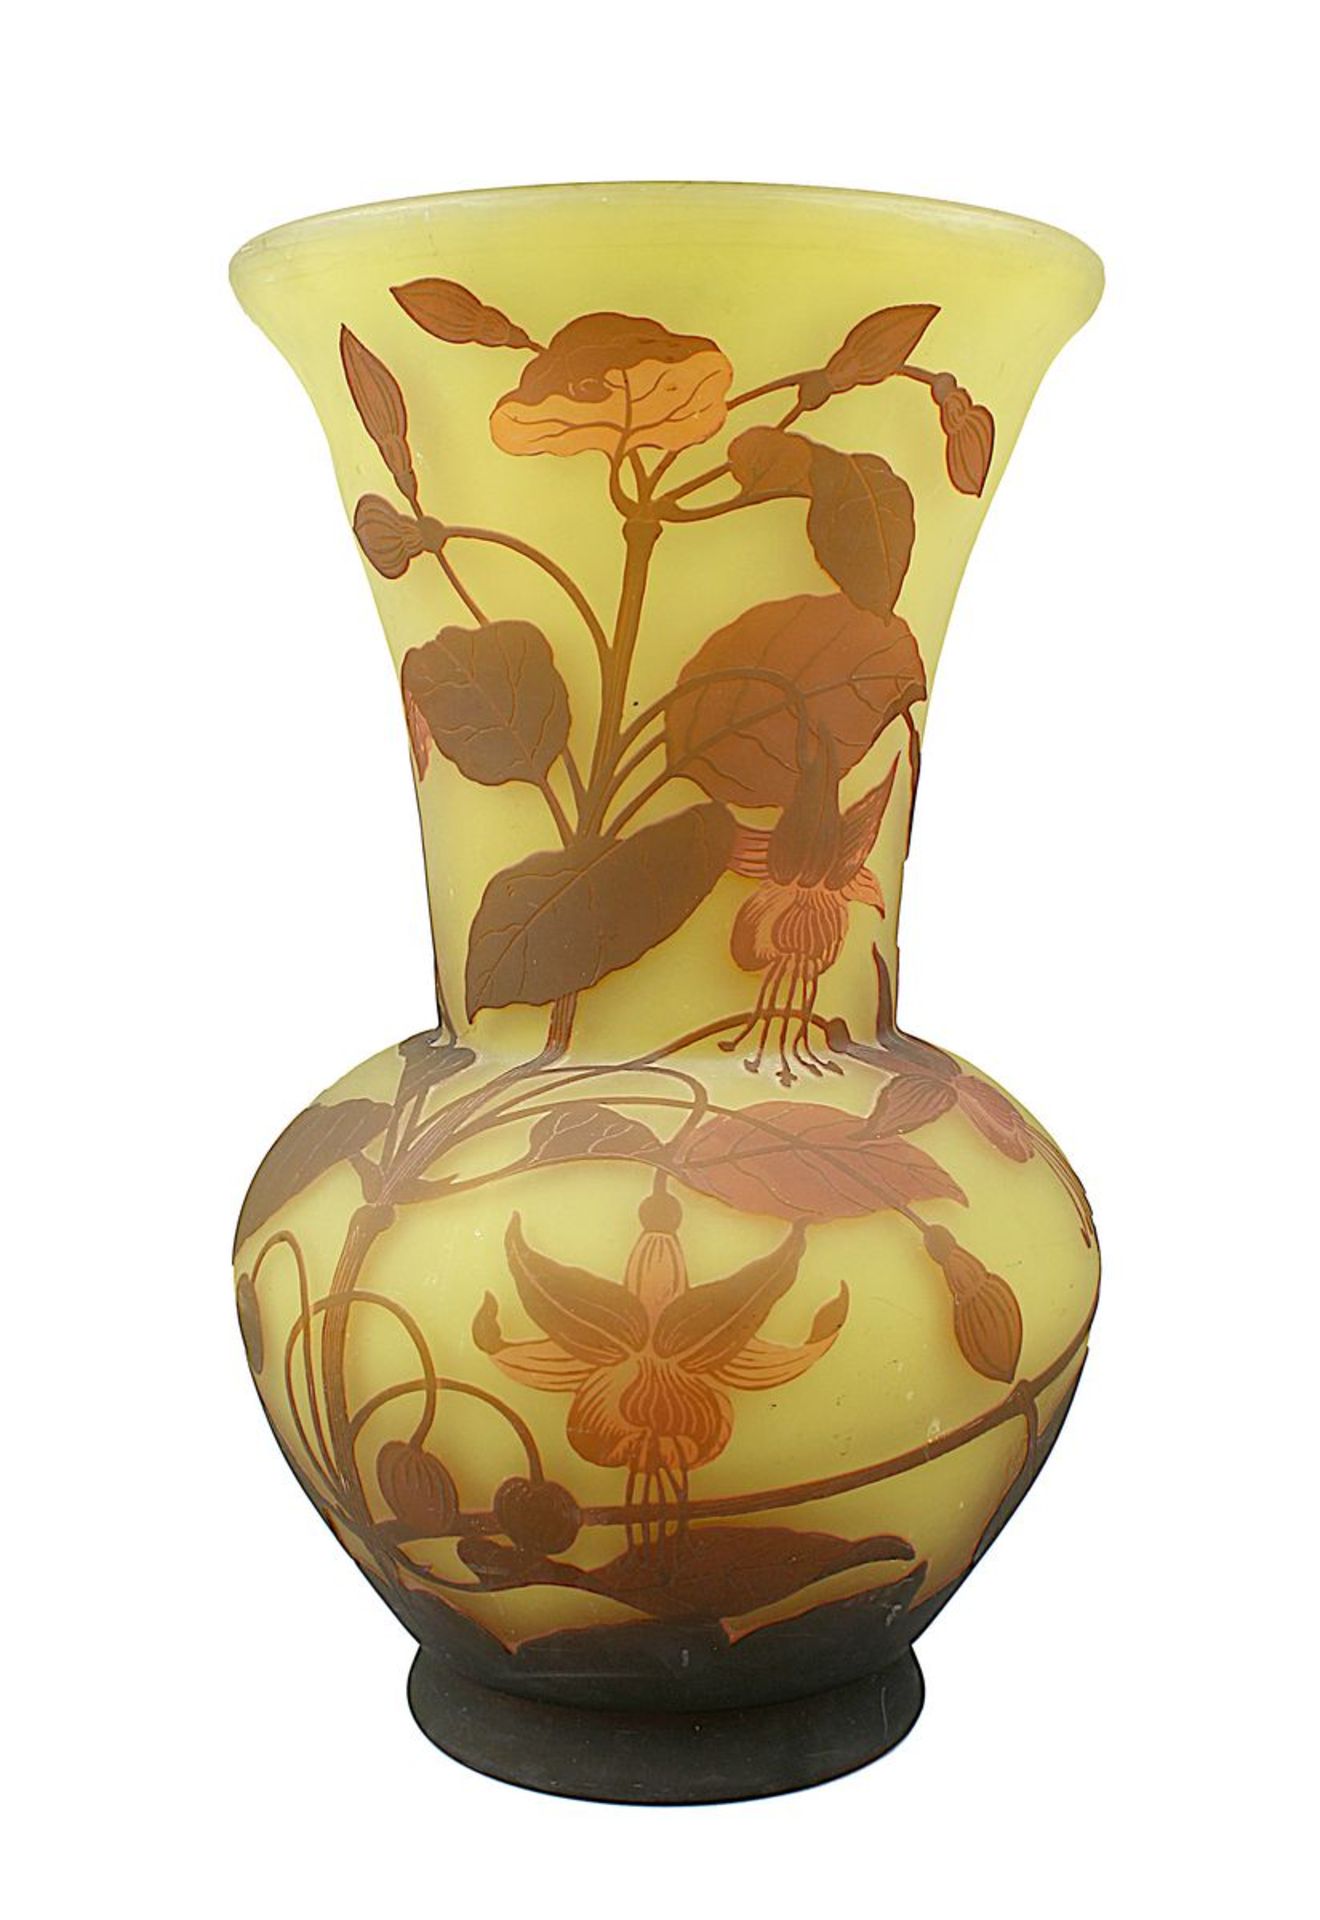 Gr. Arsall-Vase, Fuchsiendekor, Vereinigte Lausitzer Glaswerke, 1918-29, balusterförmiger Korpus aus